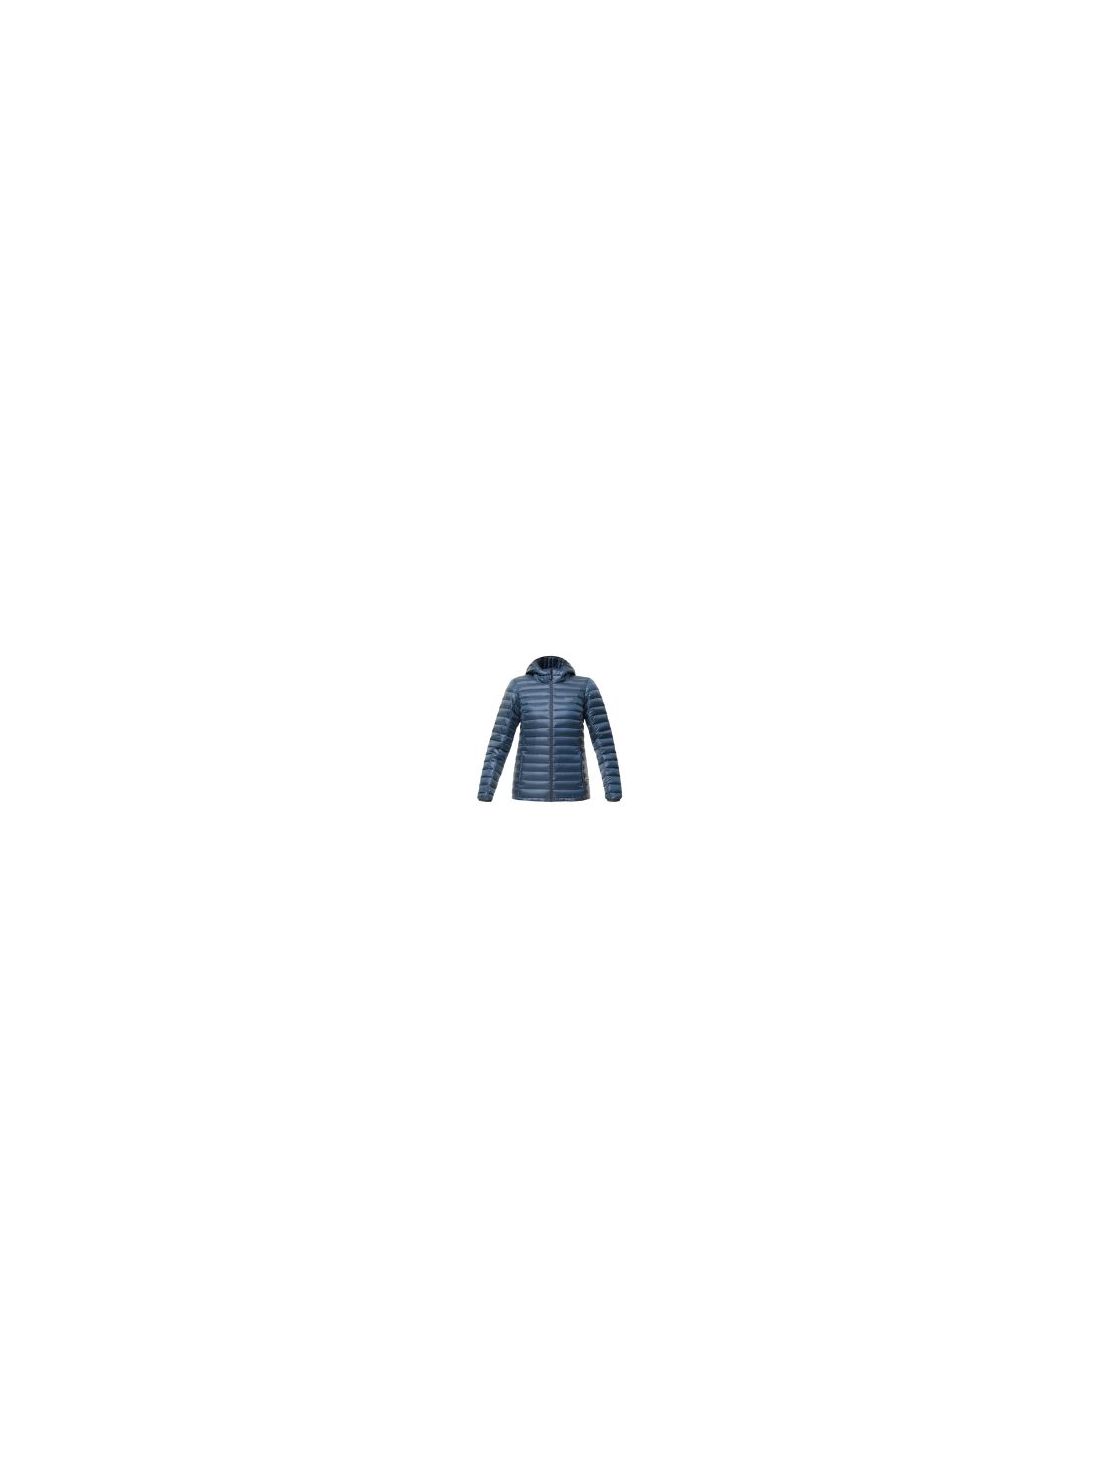 Куртка женская пуховая Bask Chamonix Light LJ V2